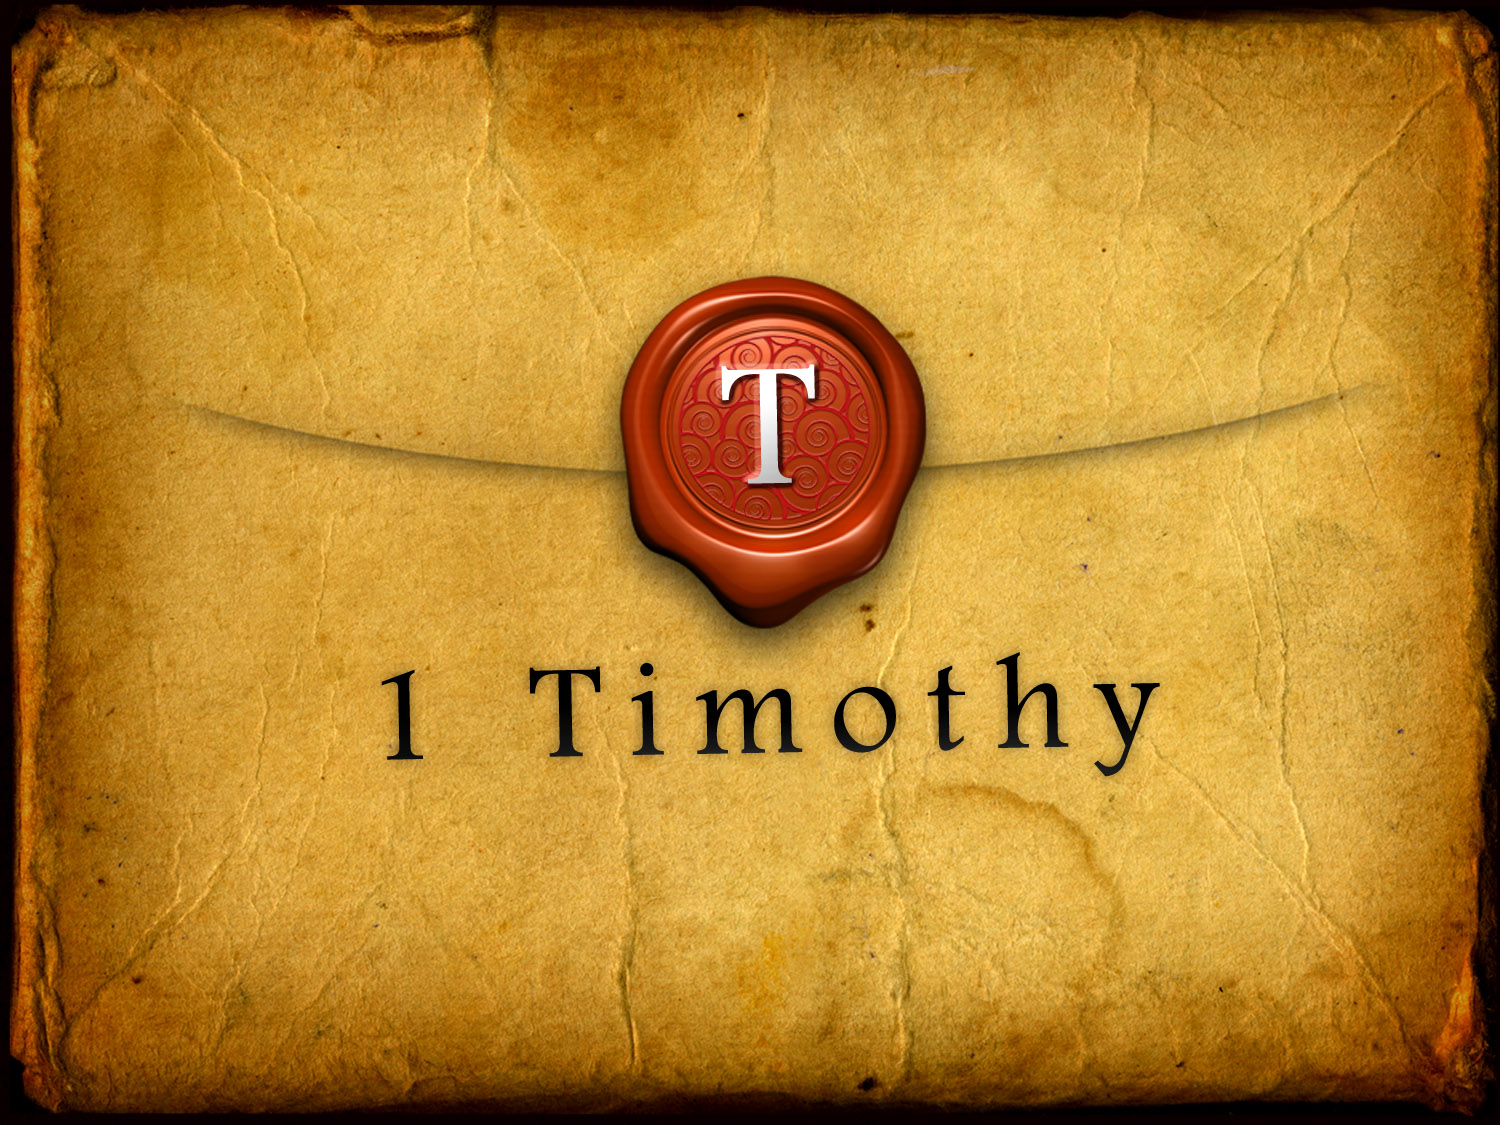 1 Timothy 6:1-2a